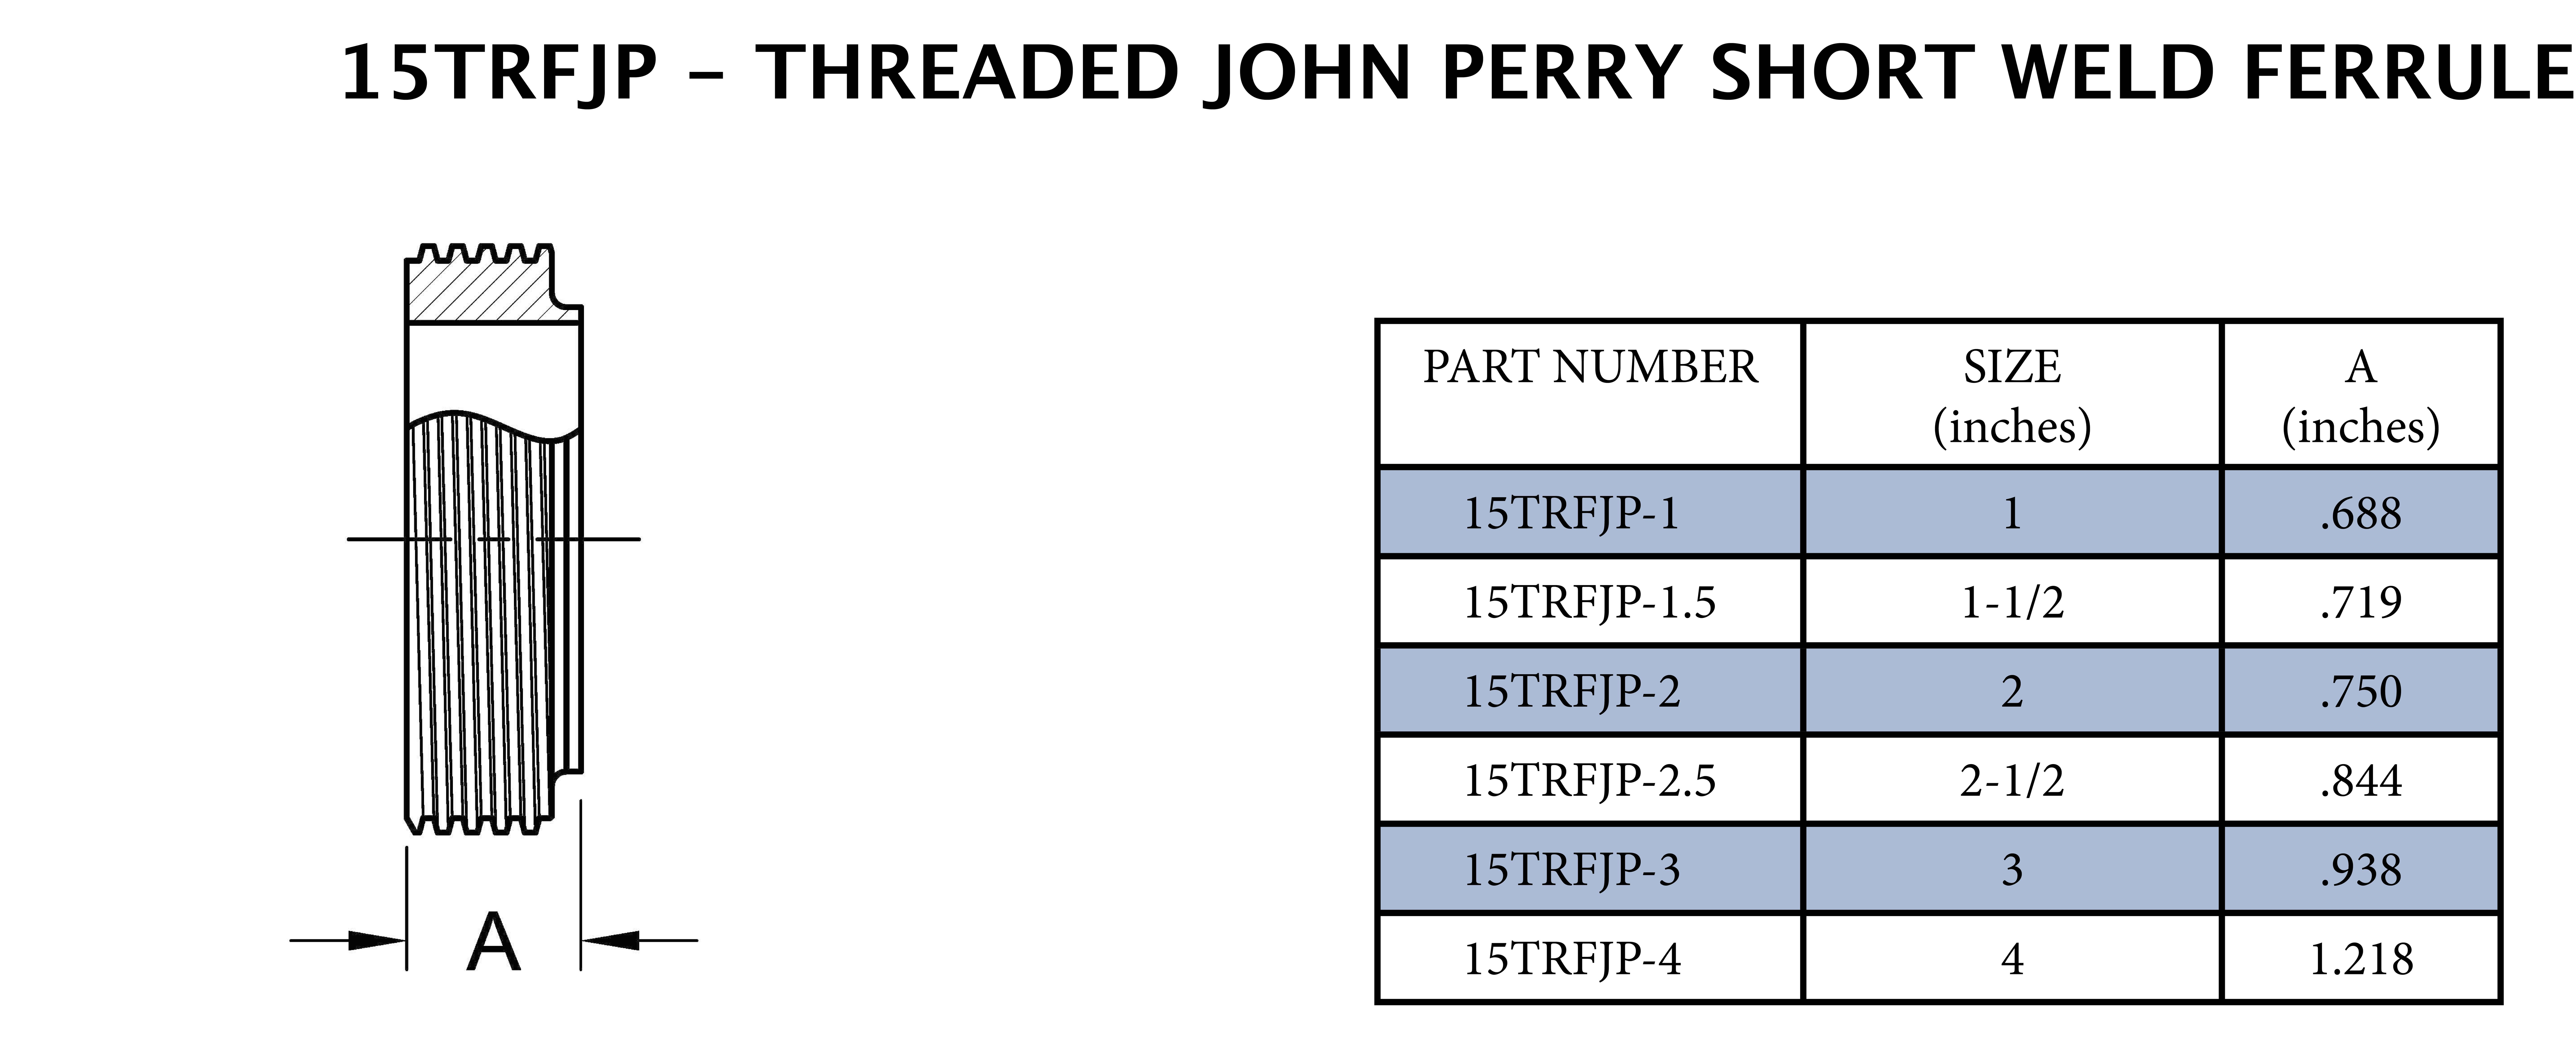 3 Threaded John Perry Short Weld Ferrule - .938 Long 316SS